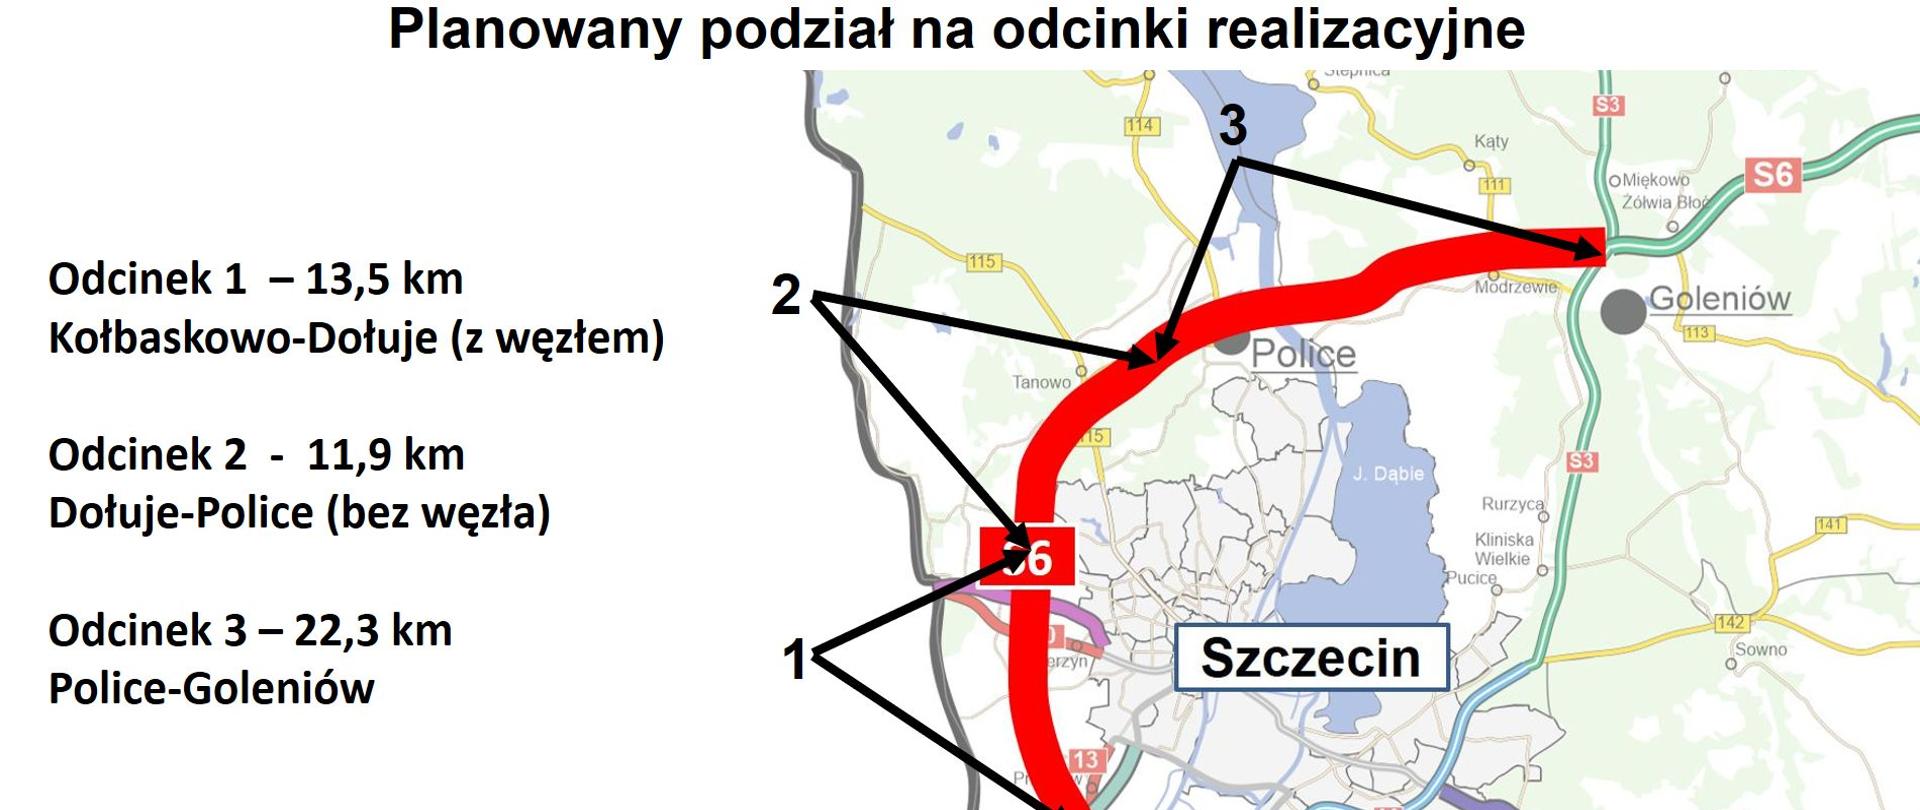 Przebieg Zachodniej Obwodnicy Szczecina w ciągu drogi S6 z podziałem na przyszłe odcinki realizacyjne